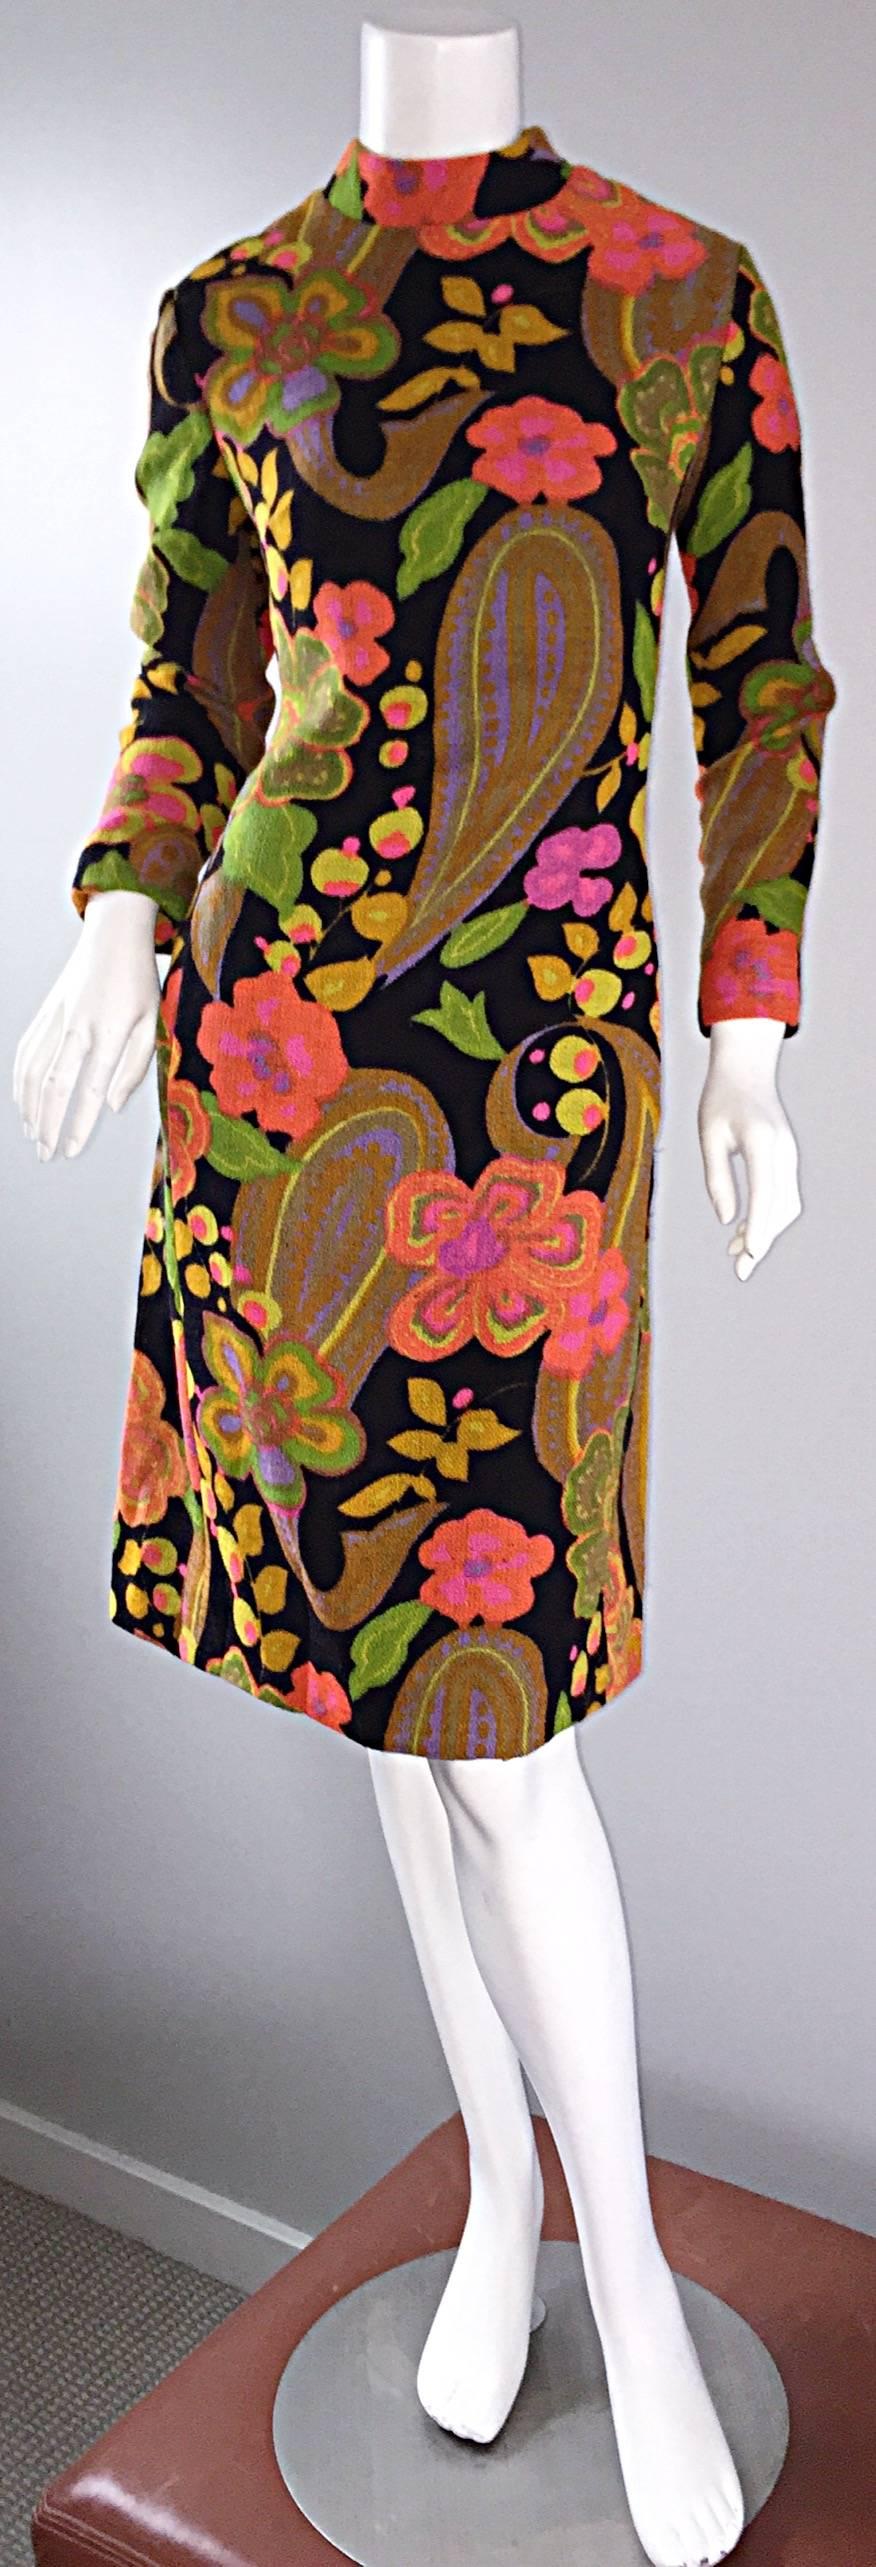 1960s 60s Psychedelic Flowers + Paisley Colorful Print Mod Retro A - Line Dress Pour femmes en vente